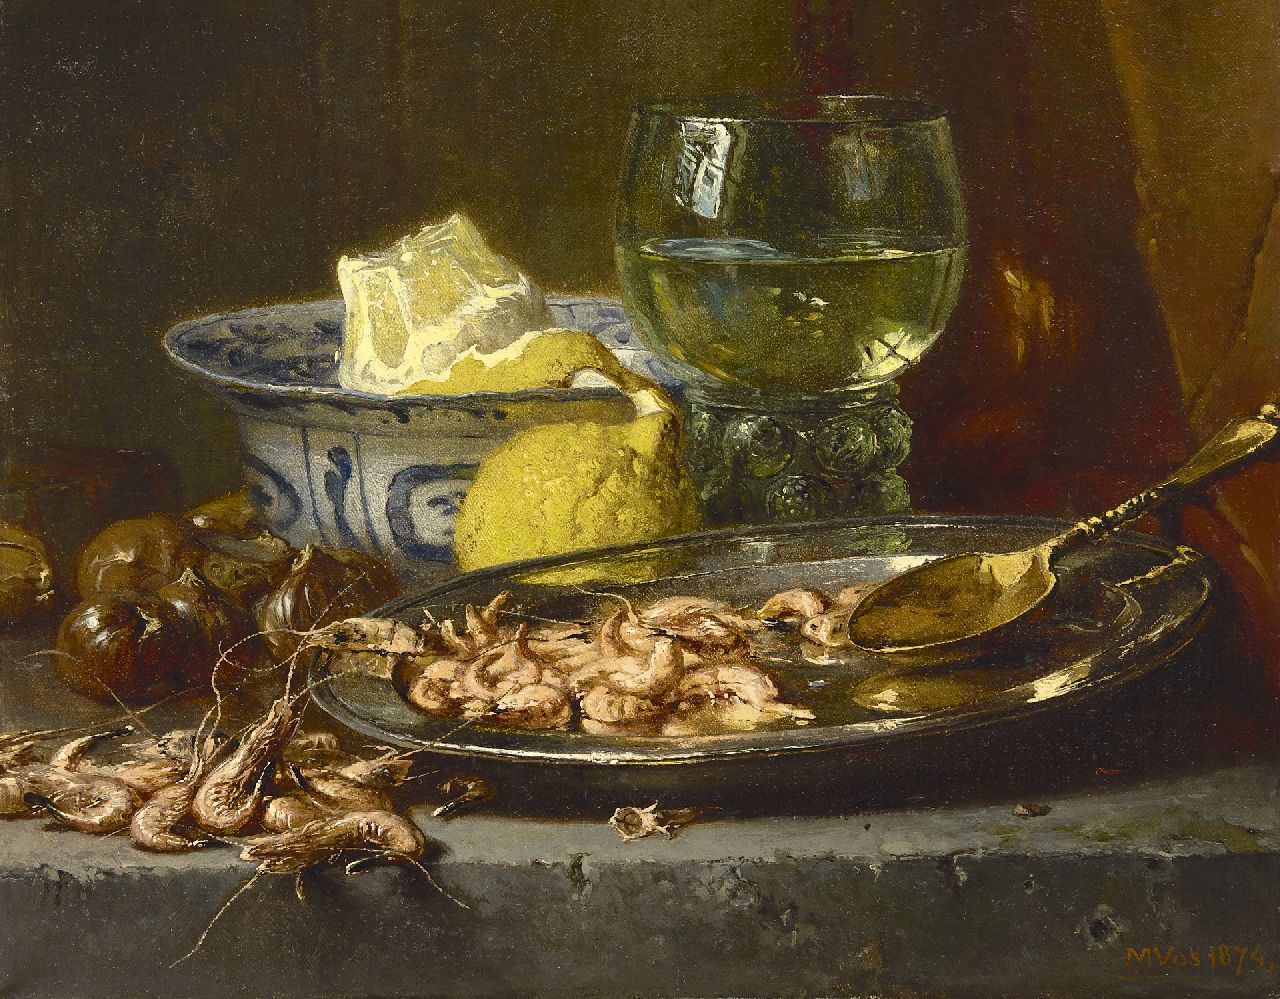 Vos M.  | Maria Vos, Stilleven met garnalen en wijnroemer, olieverf op doek 33,5 x 42,0 cm, gesigneerd rechtsonder en gedateerd 1874